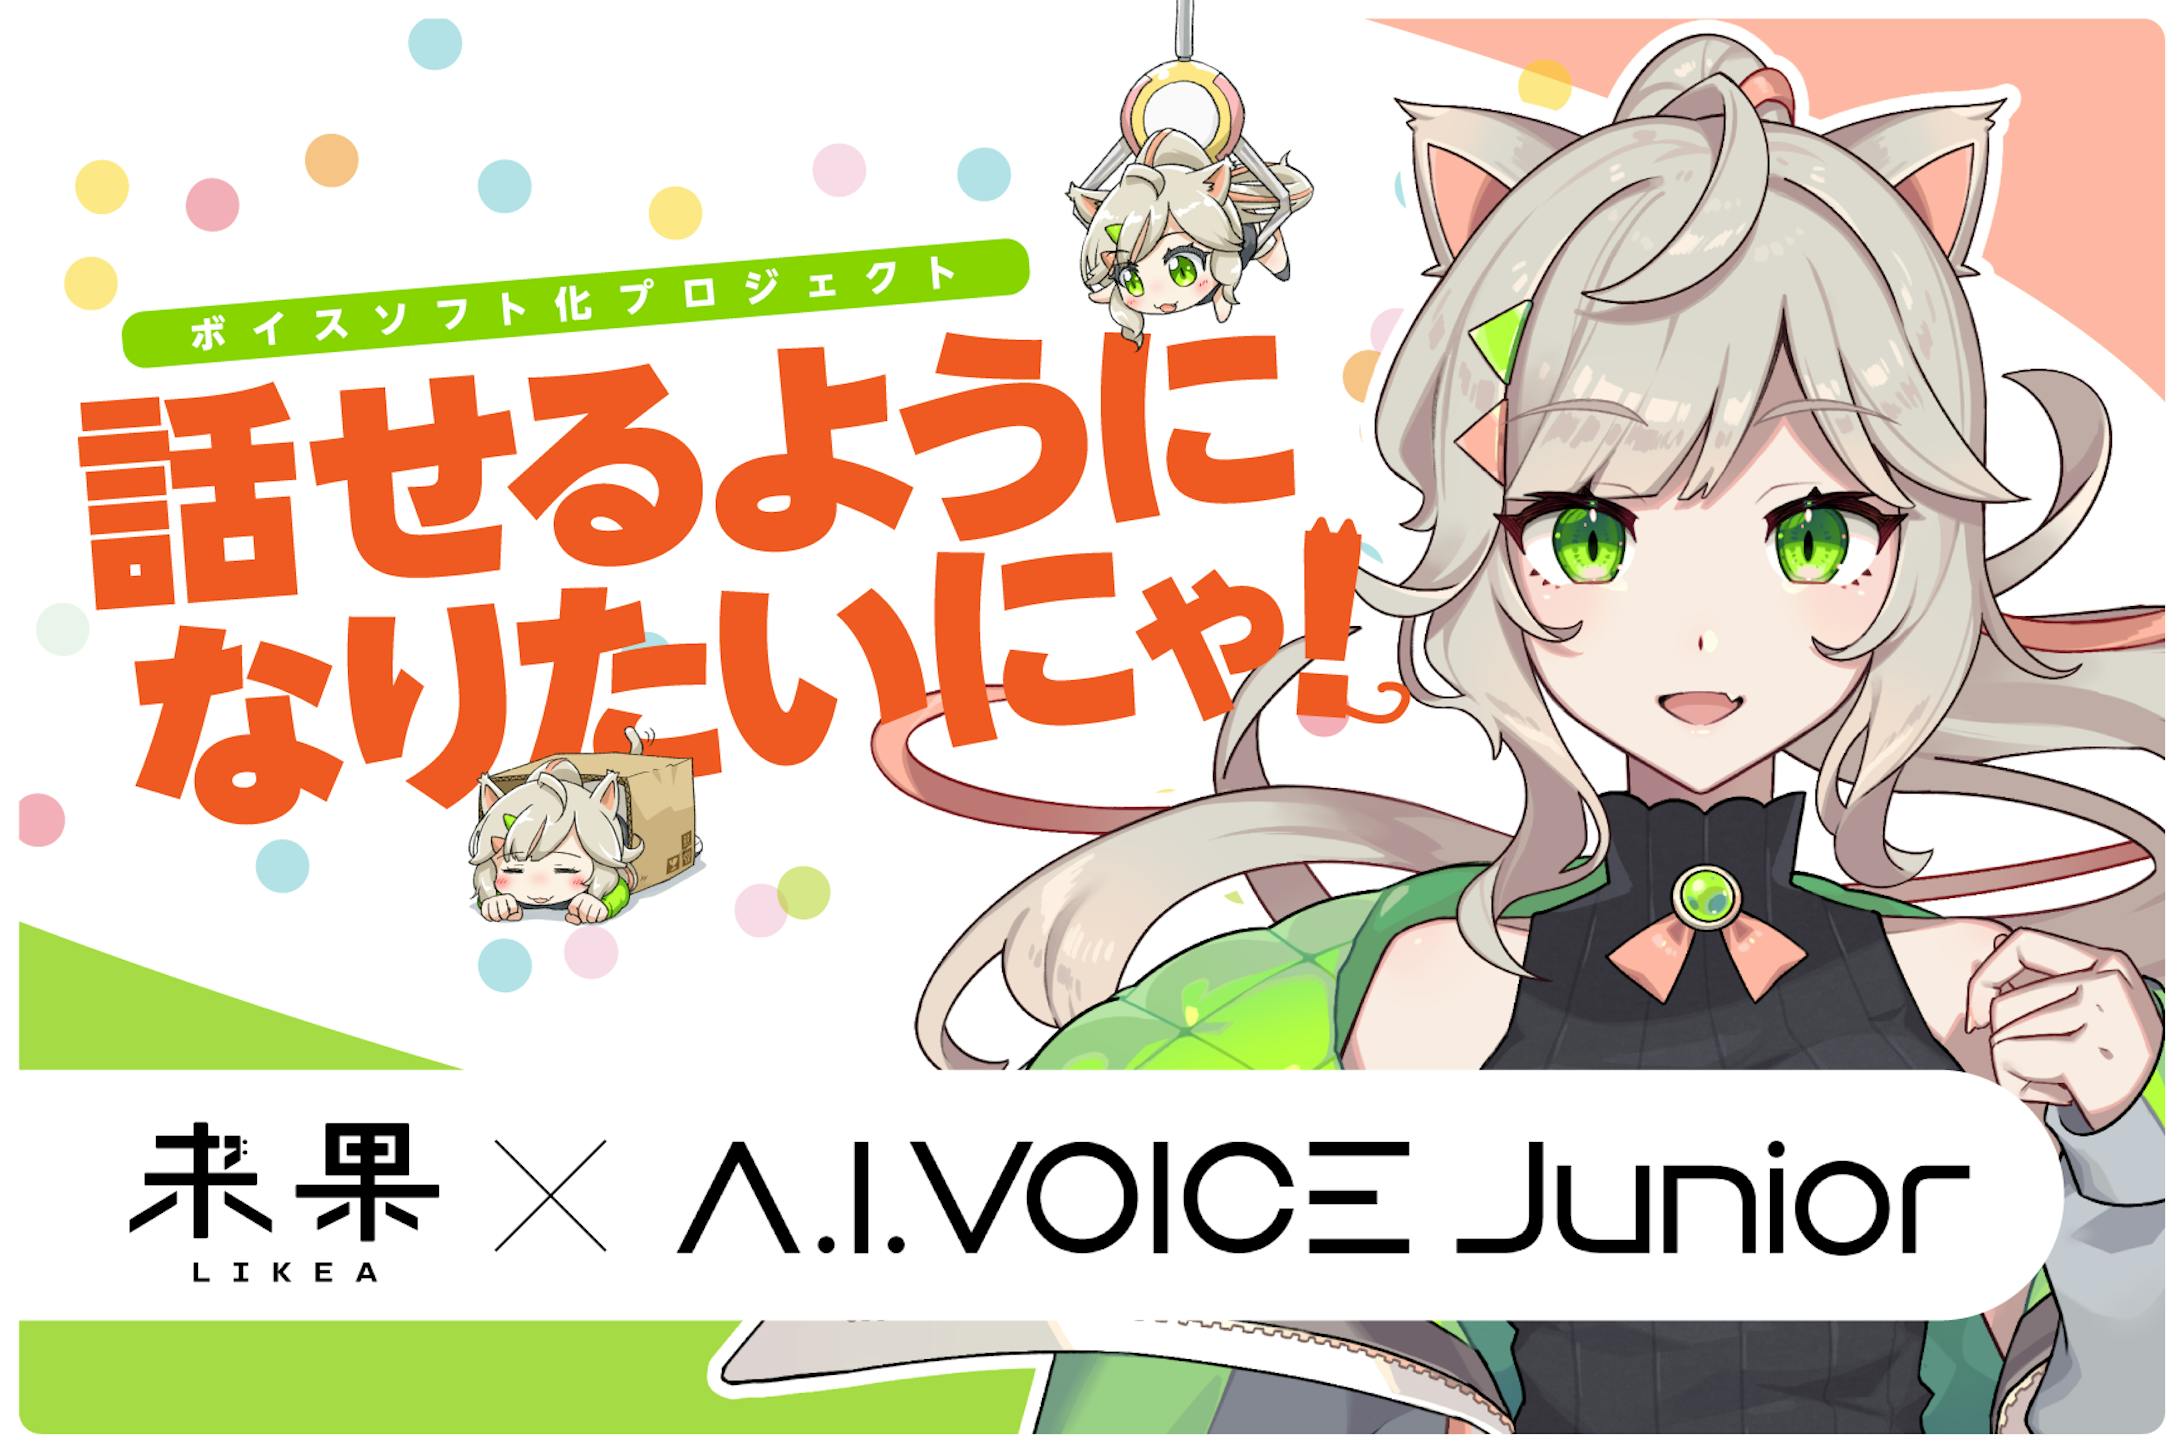 【柚子花】A.I.VOICE Junior 来果【ボイスドラマ】-1